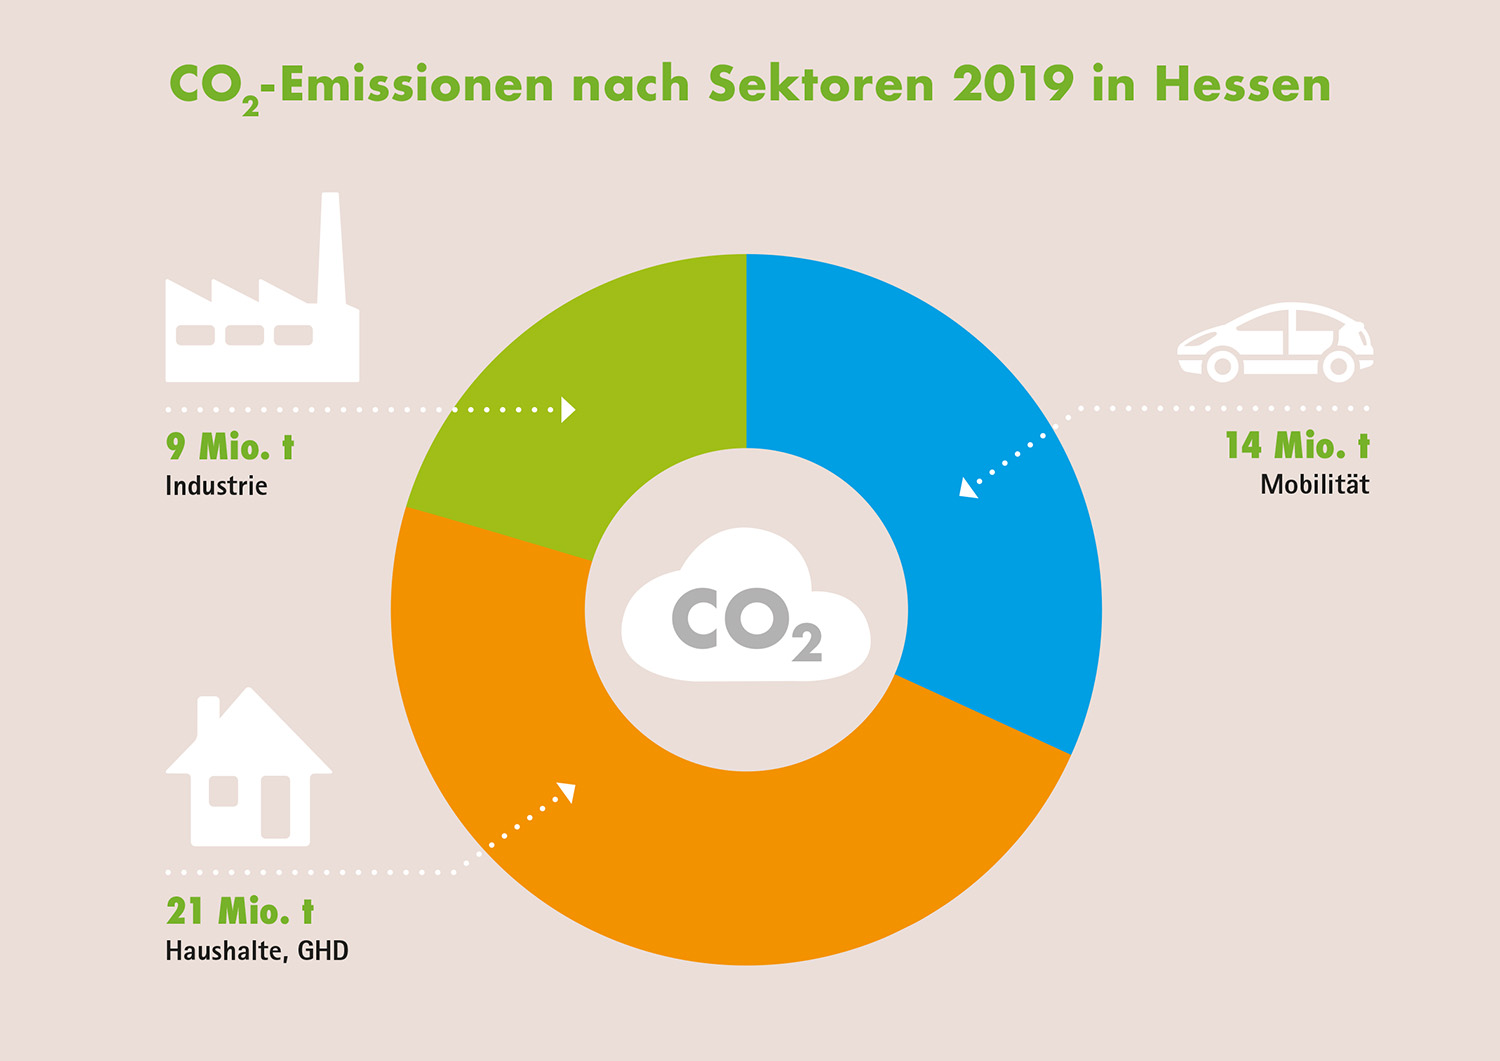 CO2-Emissionen nach Sektoren in Hessen